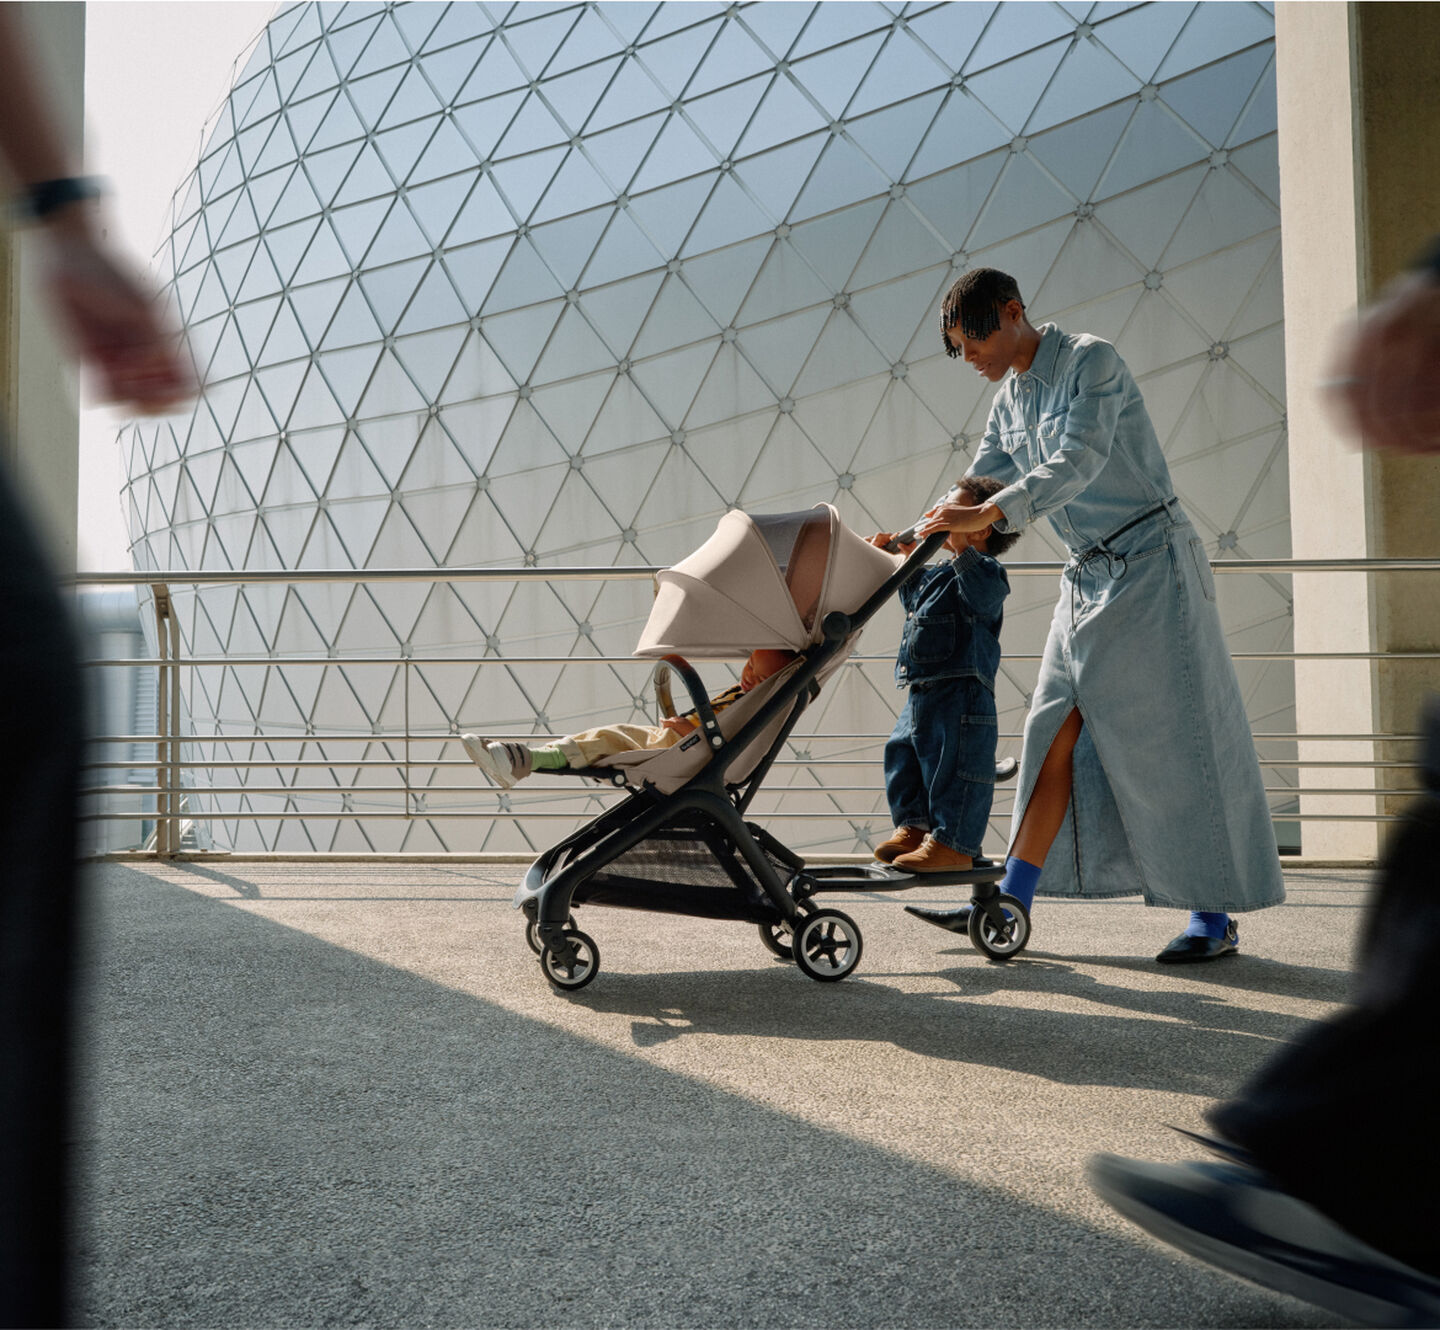 스타일리시한 엄마가 부가부 버터플라이 여행용 스트롤러에 타고 있는 아이 및 휠보드에 올라탄 유아와 함께 걷고 있습니다.